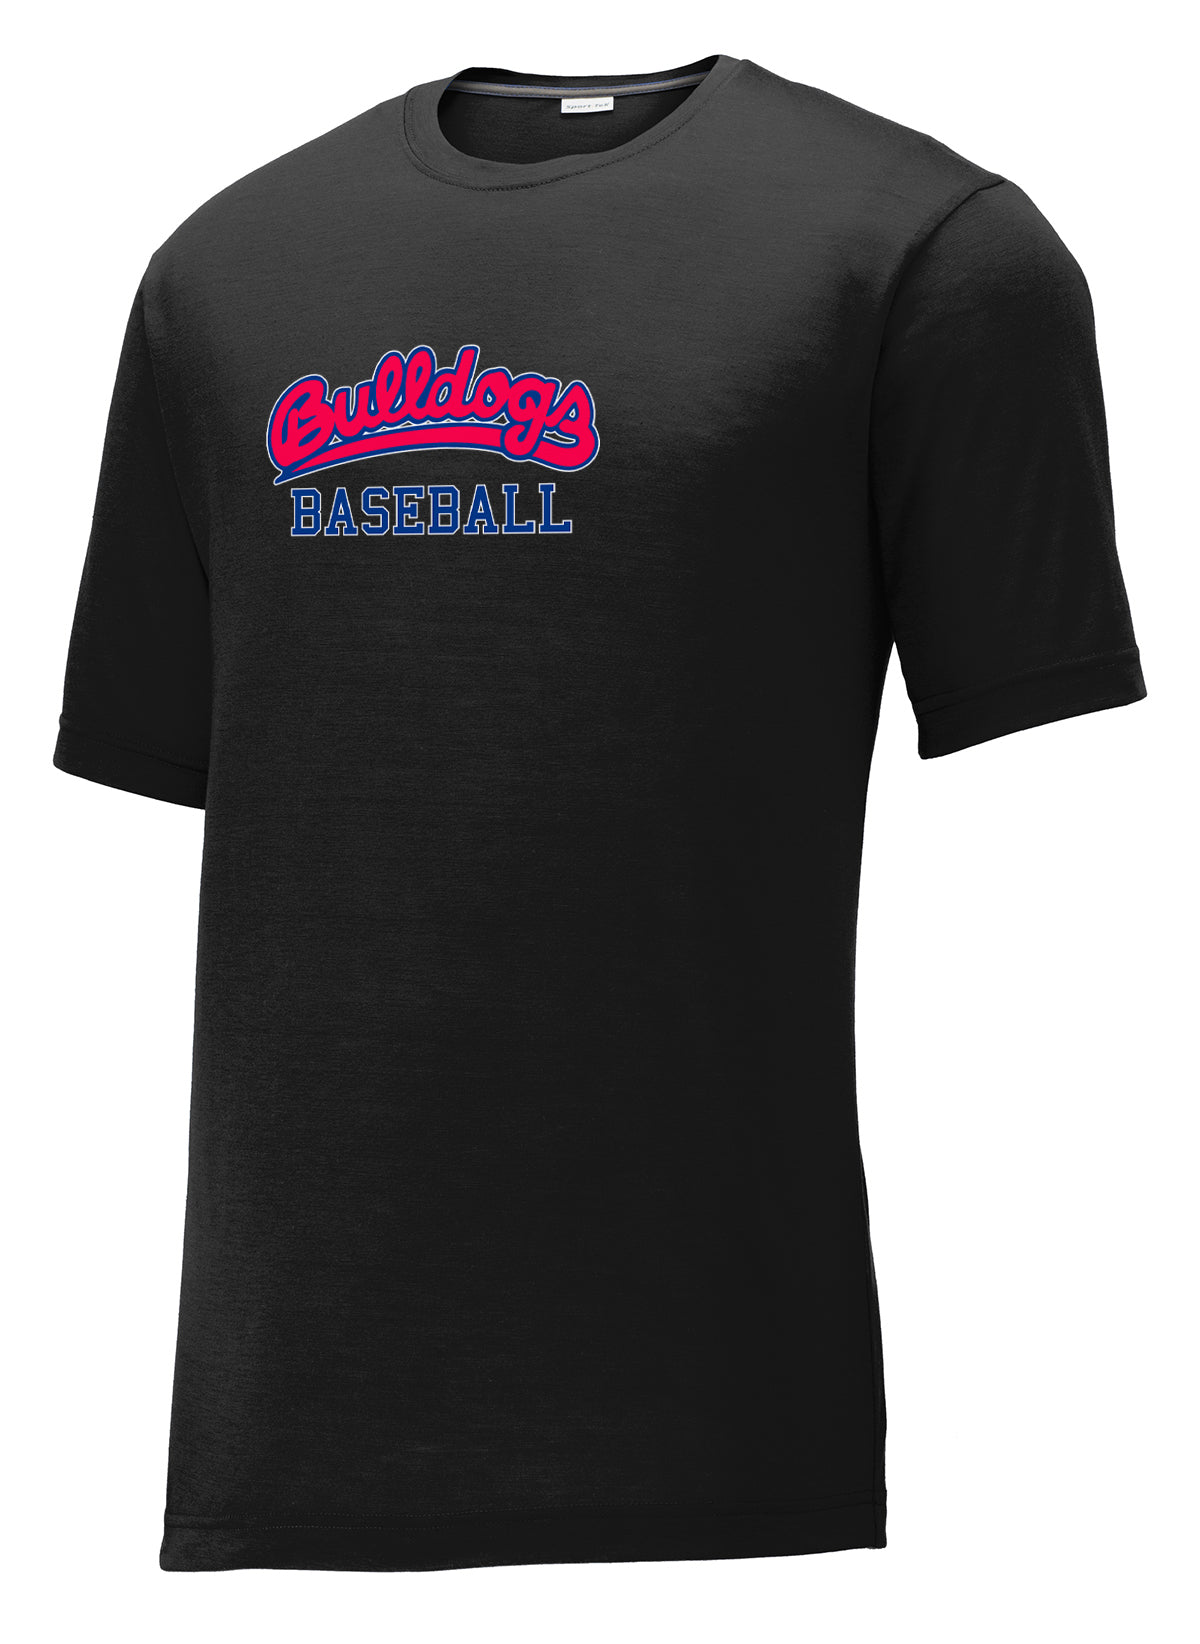 Michigan Bulldogs Baseball CottonTouch Performance T-Shirt